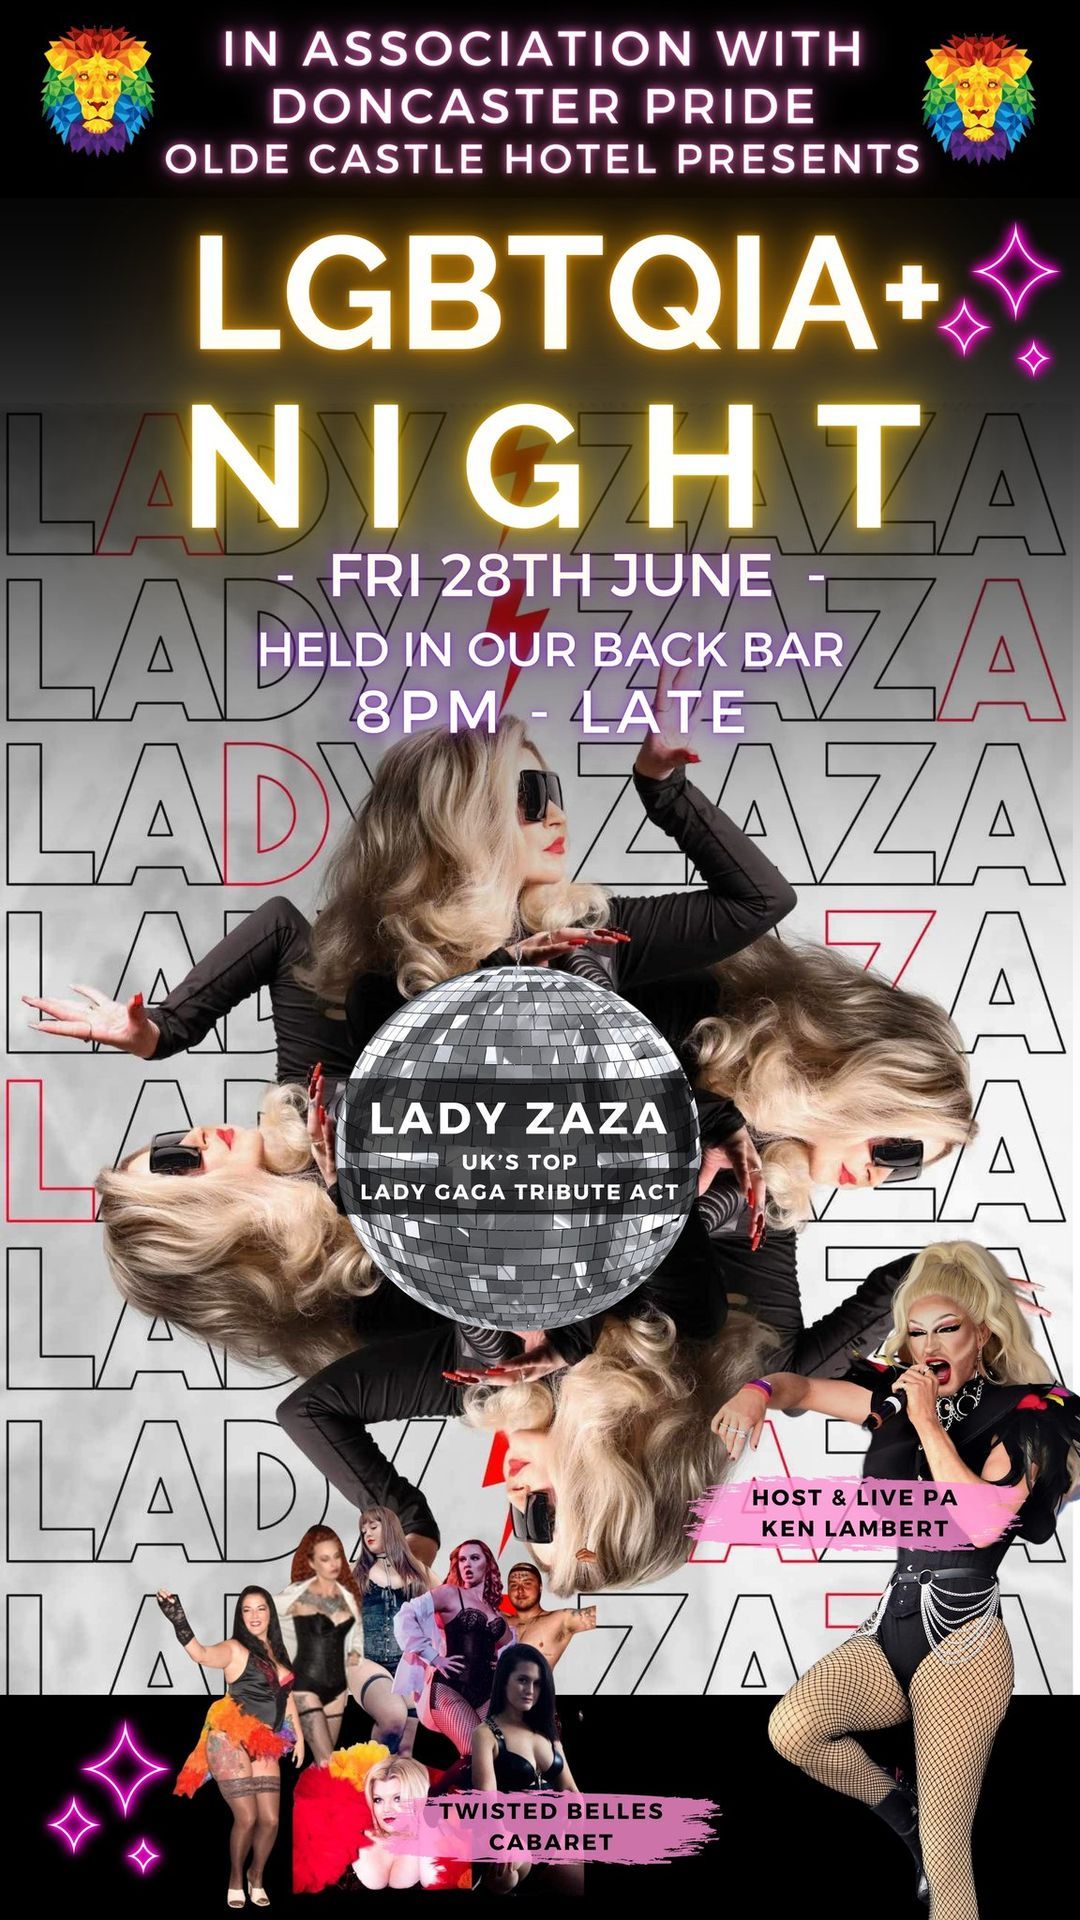 LGBTQIA+ NIGHT WITH LADY ZAZA